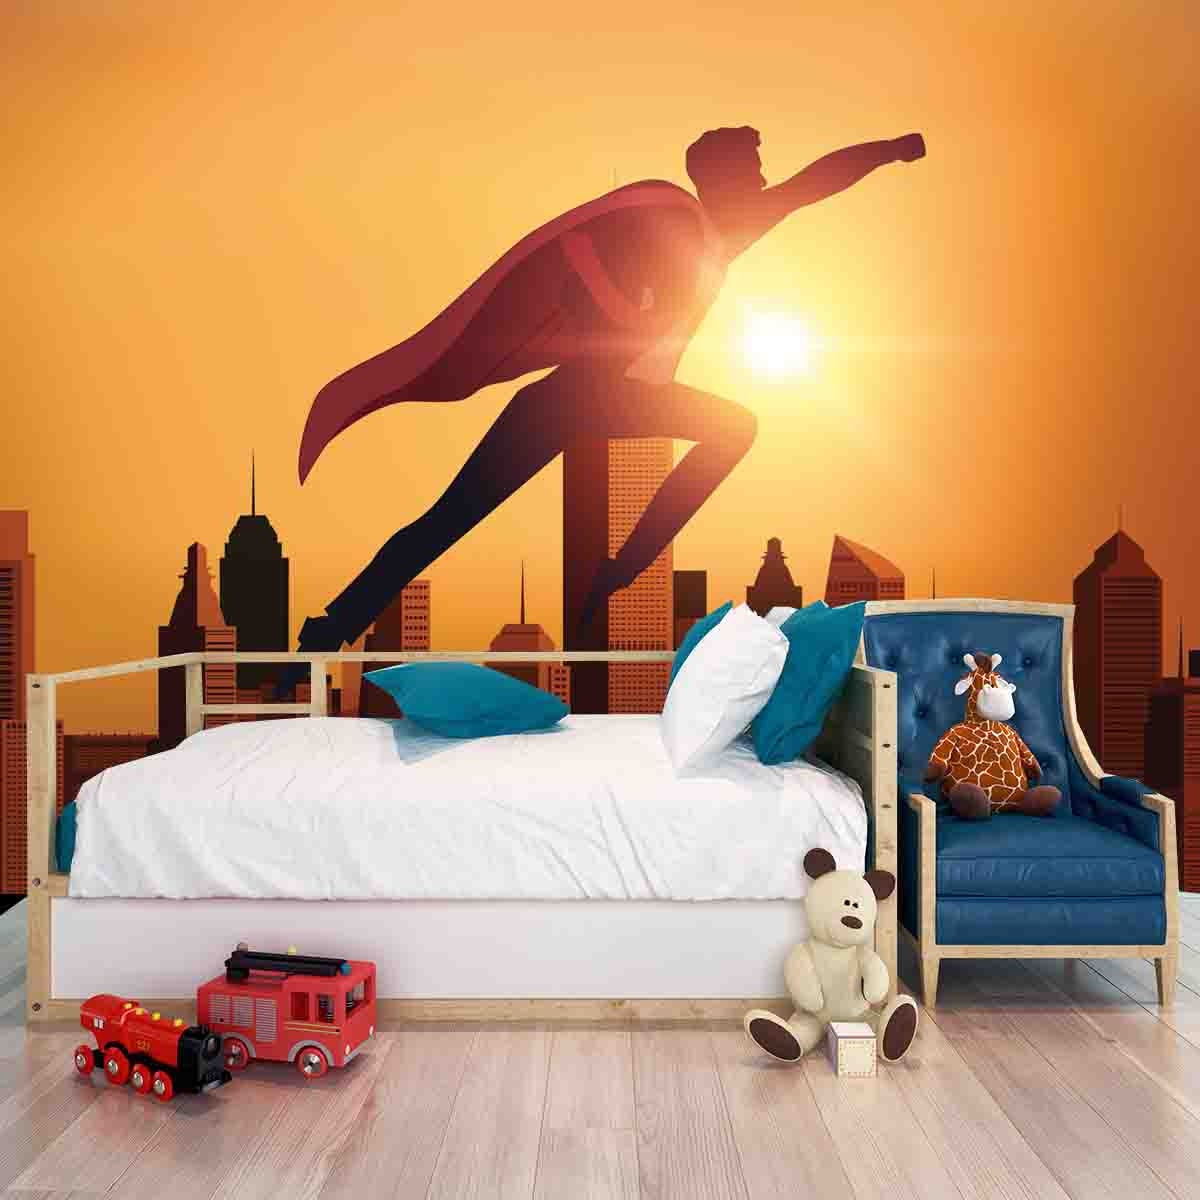 Boys Flying Superhero Over the City Wallpaper Bedroom Mural